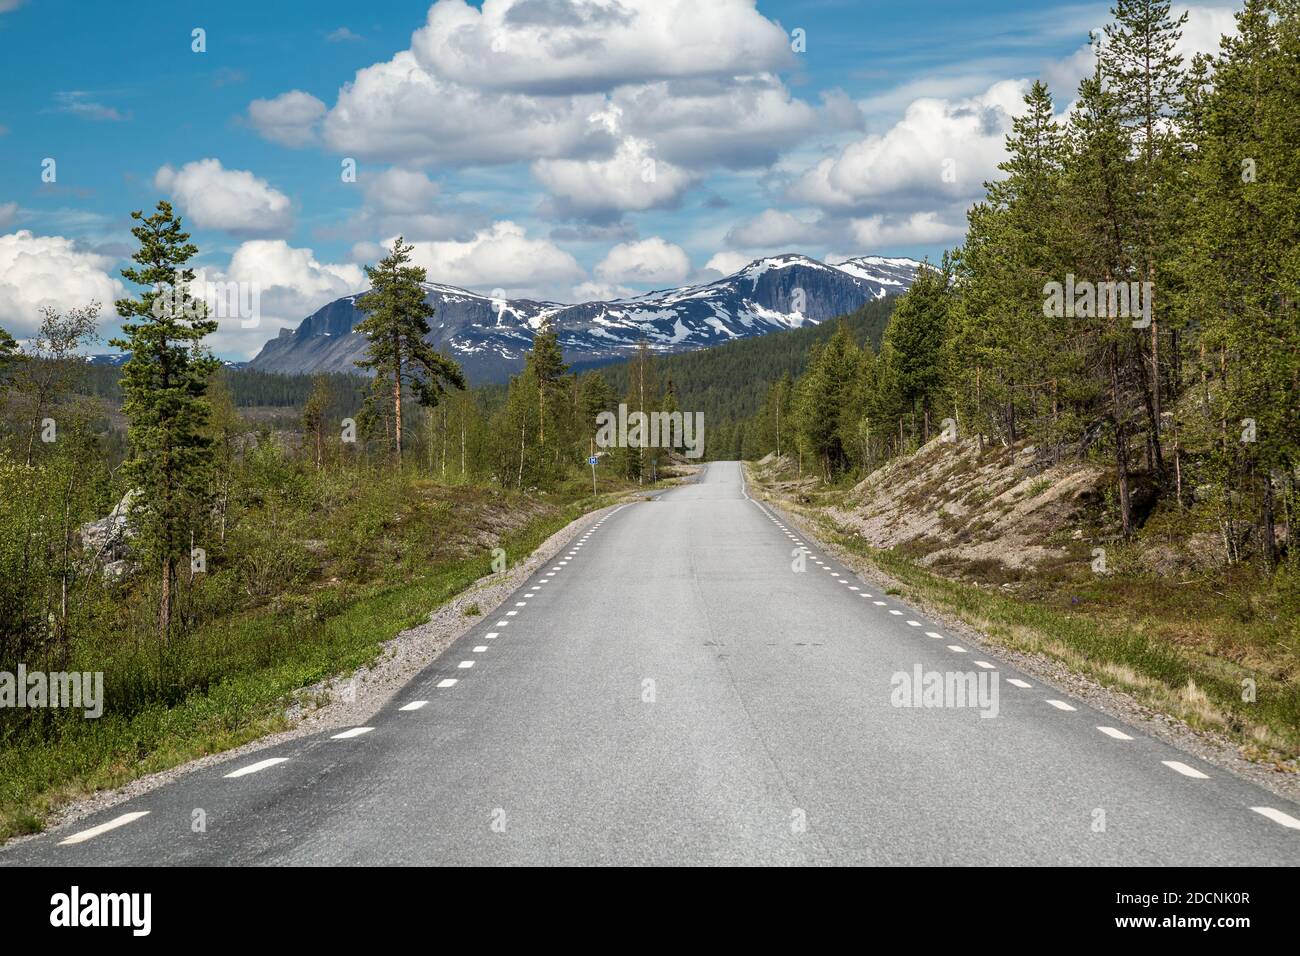 Schmale, einsame Straße durch die arktische Wildnis Lapplands, Schweden, die Jokkmokk und Kvikkjokk mit einer zerklüfteten, schneebedeckten Bergkette verbindet. Stockfoto